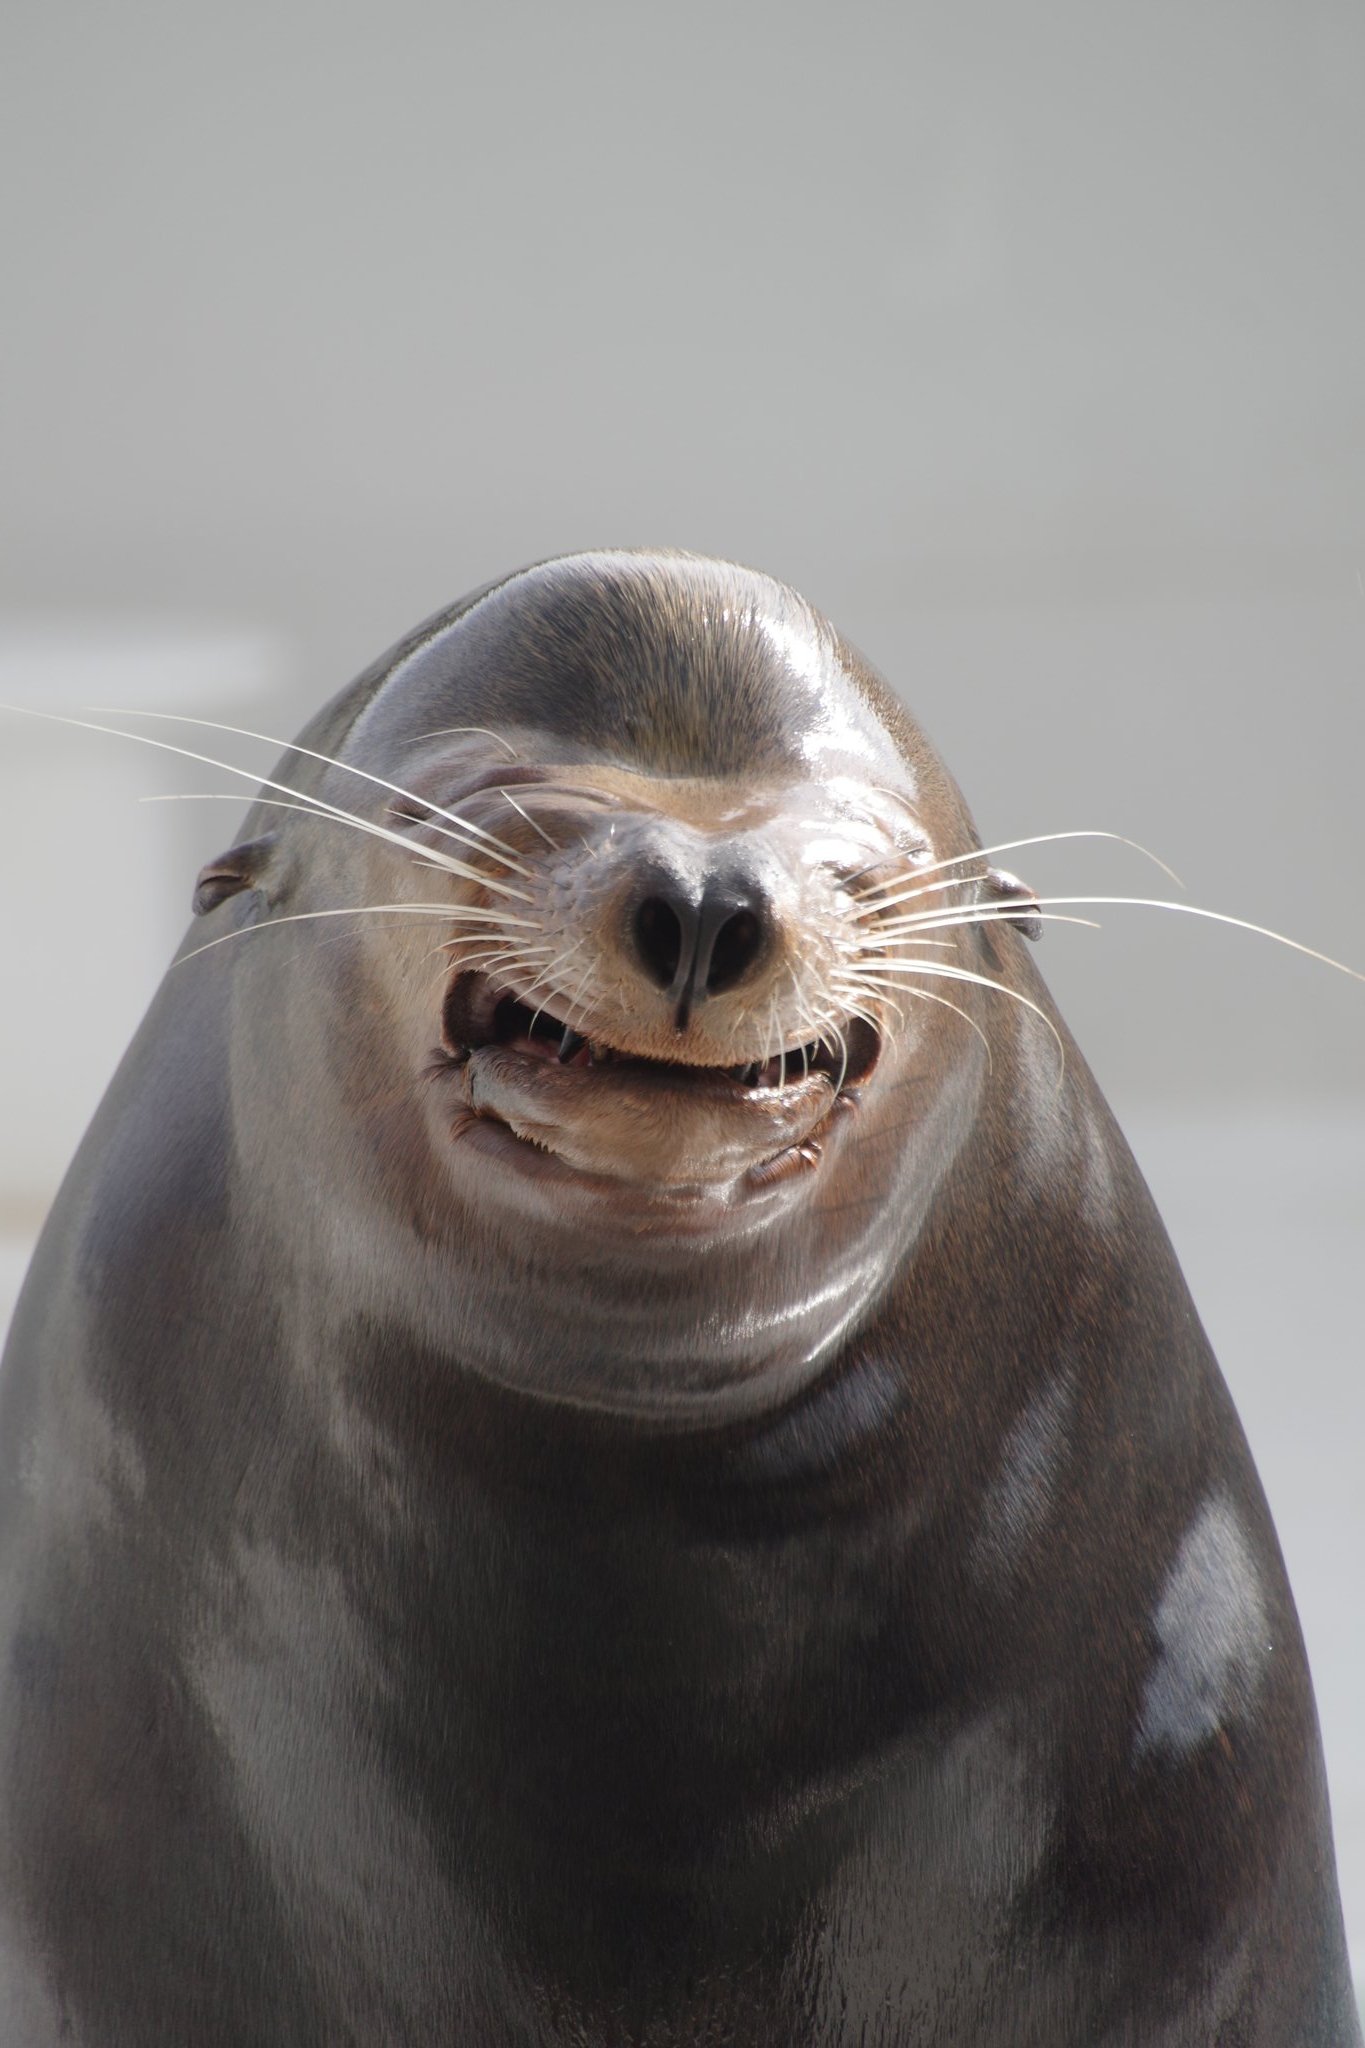 Tomokey 個人的には一枚目 サンくん の顔がいかにも 笑うアシカ にふさわしい お土産のお菓子のパッケージに似てる と思っている 二枚目はサンくんの父親であるカンジくん 鴨川シーワールド 水族館 カリフォルニアアシカ 笑うアシカ T Co